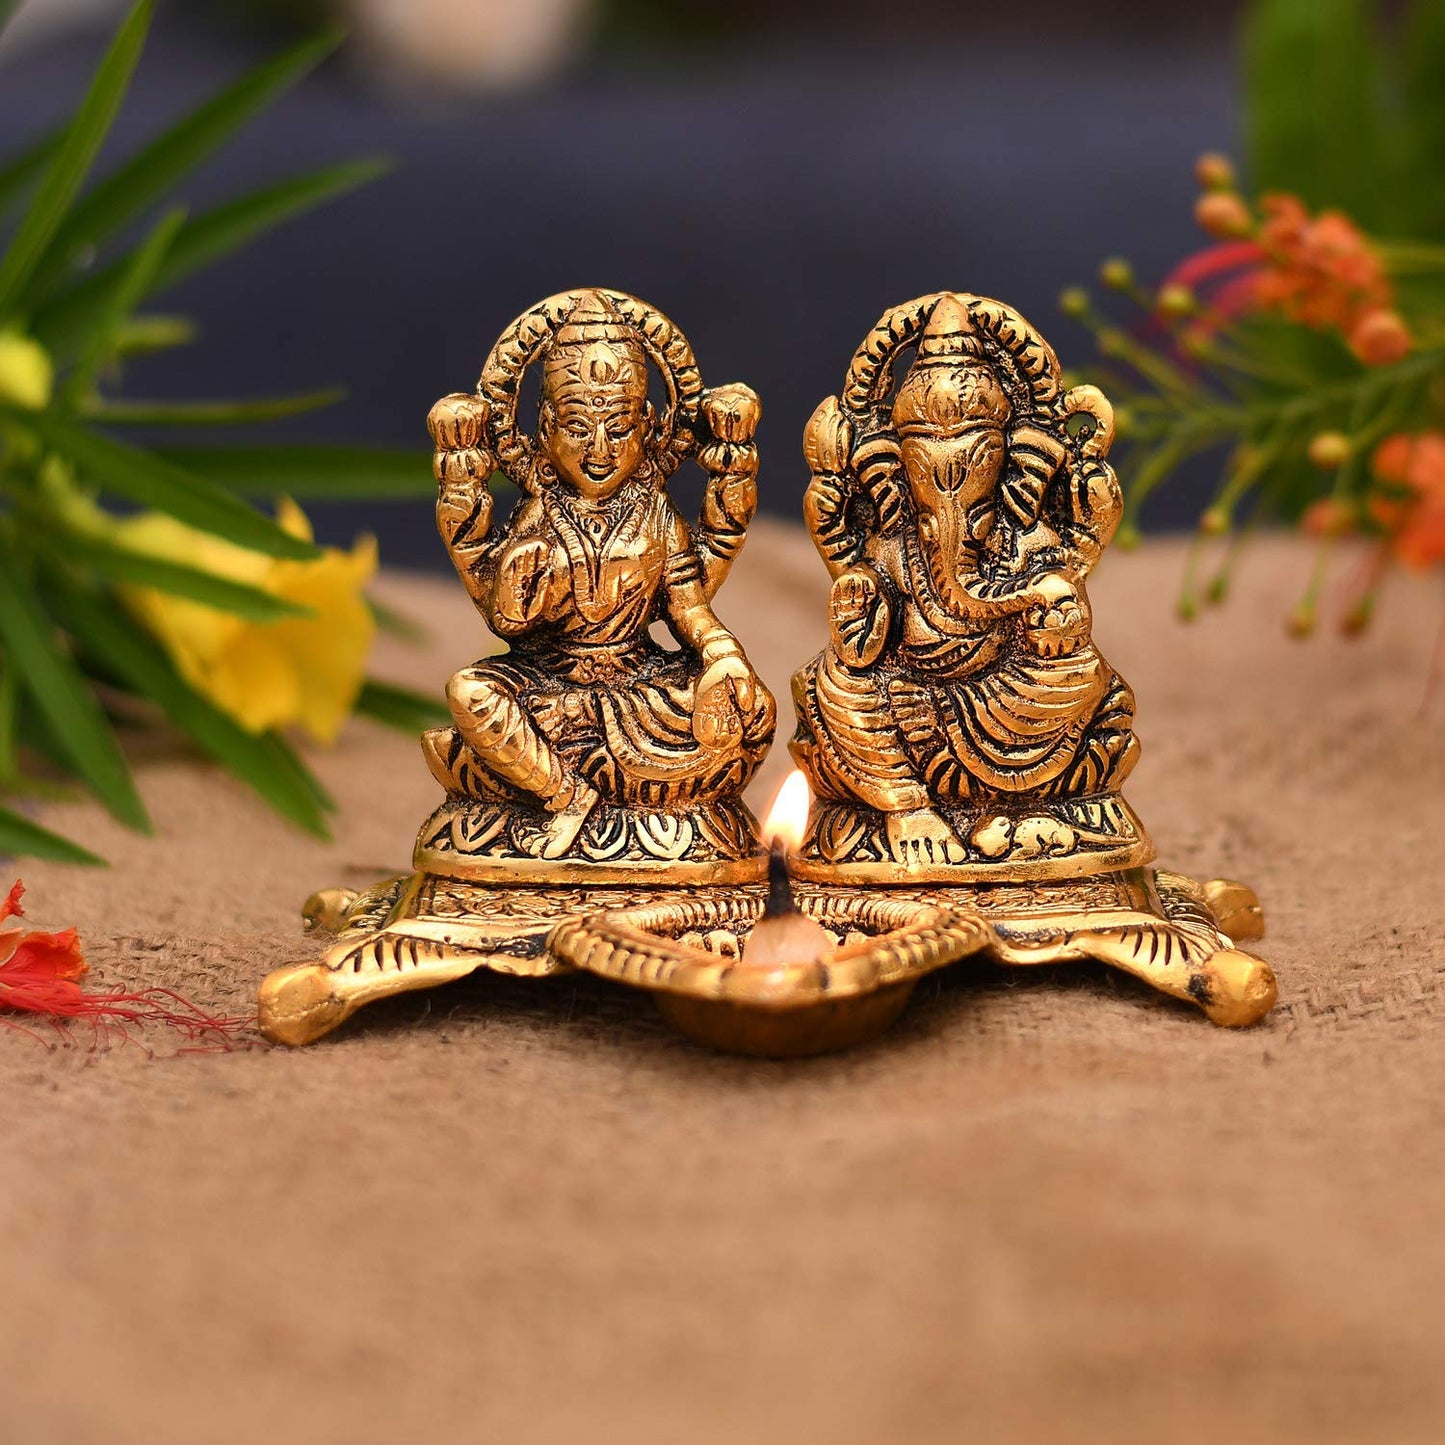 DesiDiya® Laxmi Ganesh Idol Showpiece with Diya/Lord Idol with Diya/Diwali Home Decoration Items/Lakshmi Ganesh for Diwali Puja